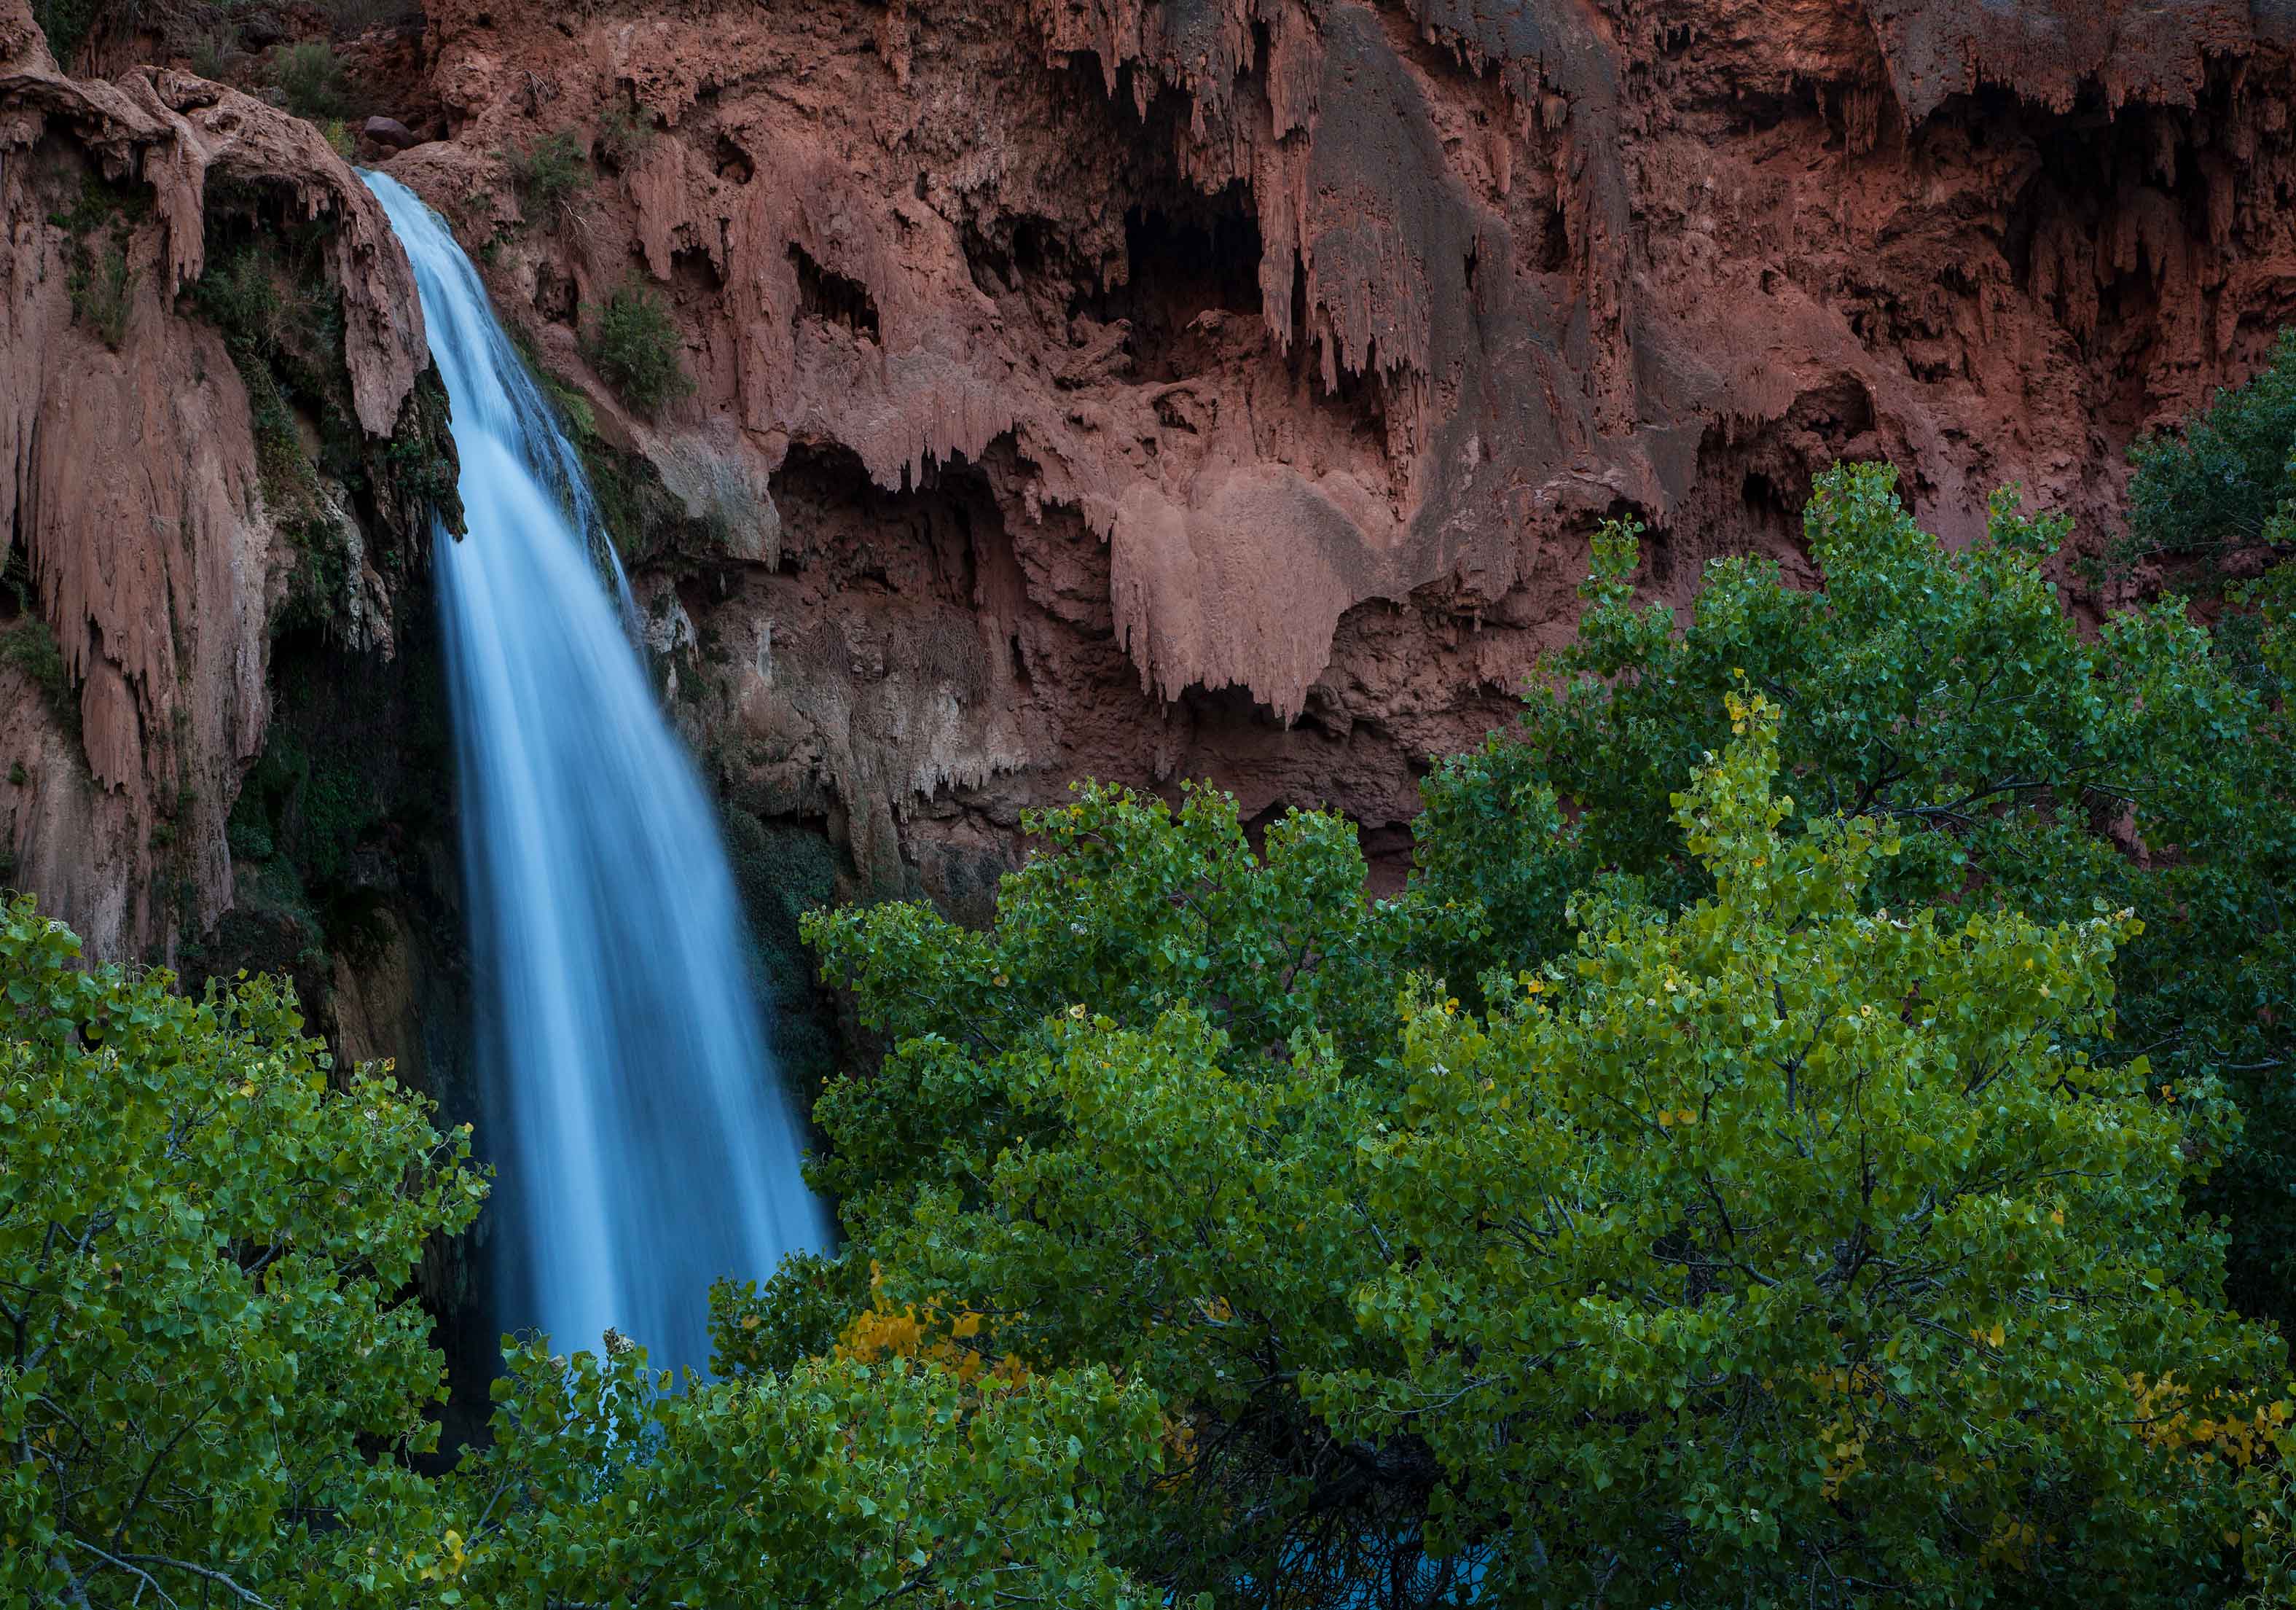 Havasu Falls at Havasupai in the Grand Canyon, Arizona